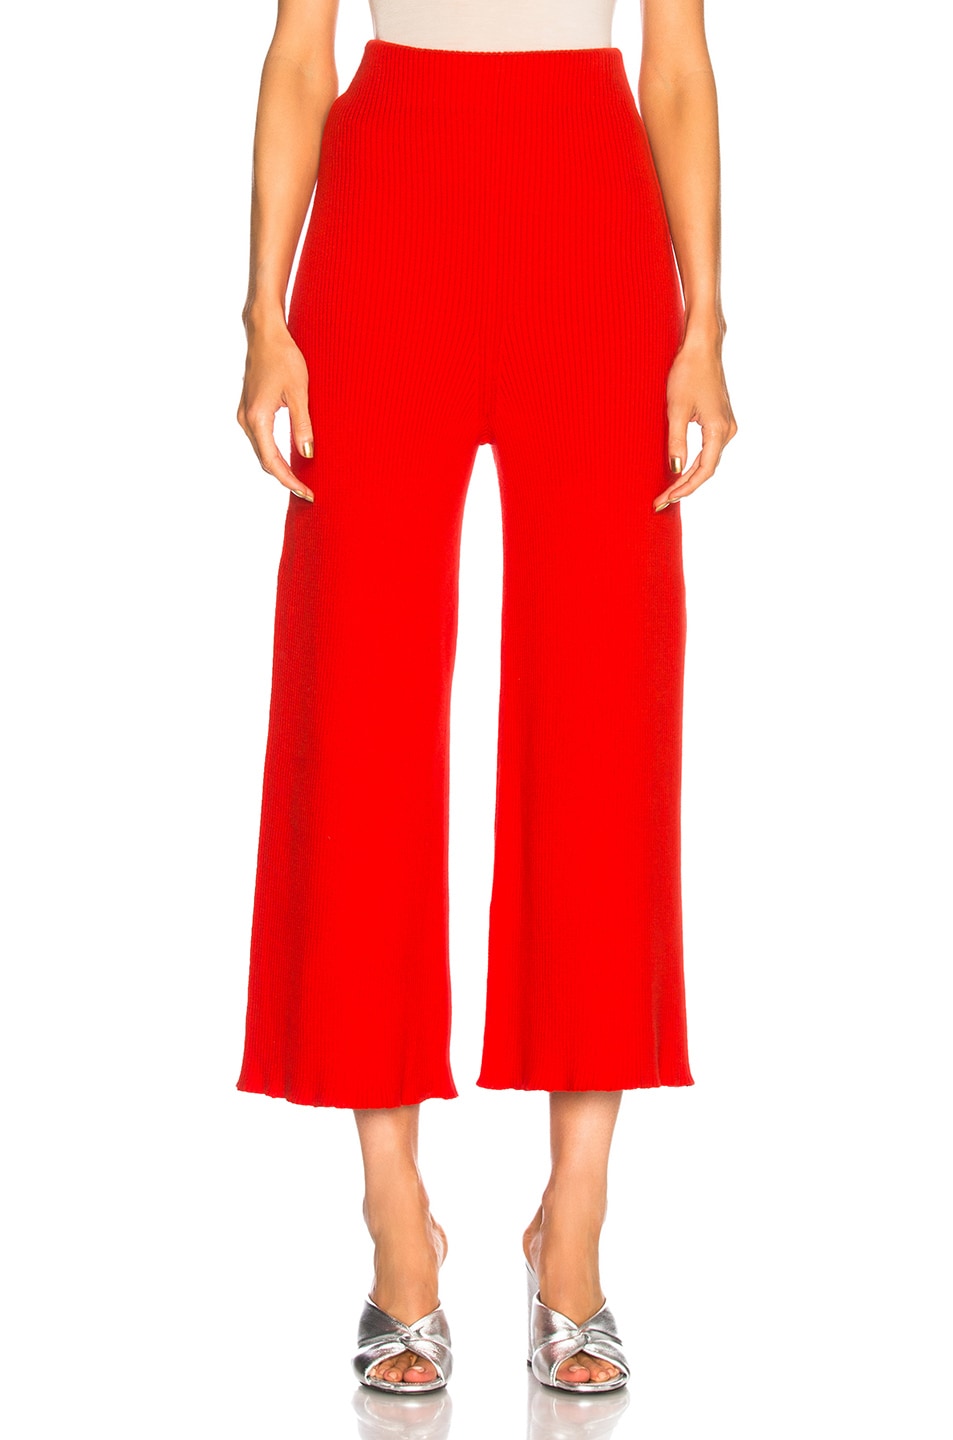 Mara Hoffman Nellie Knit Pants in Red | FWRD